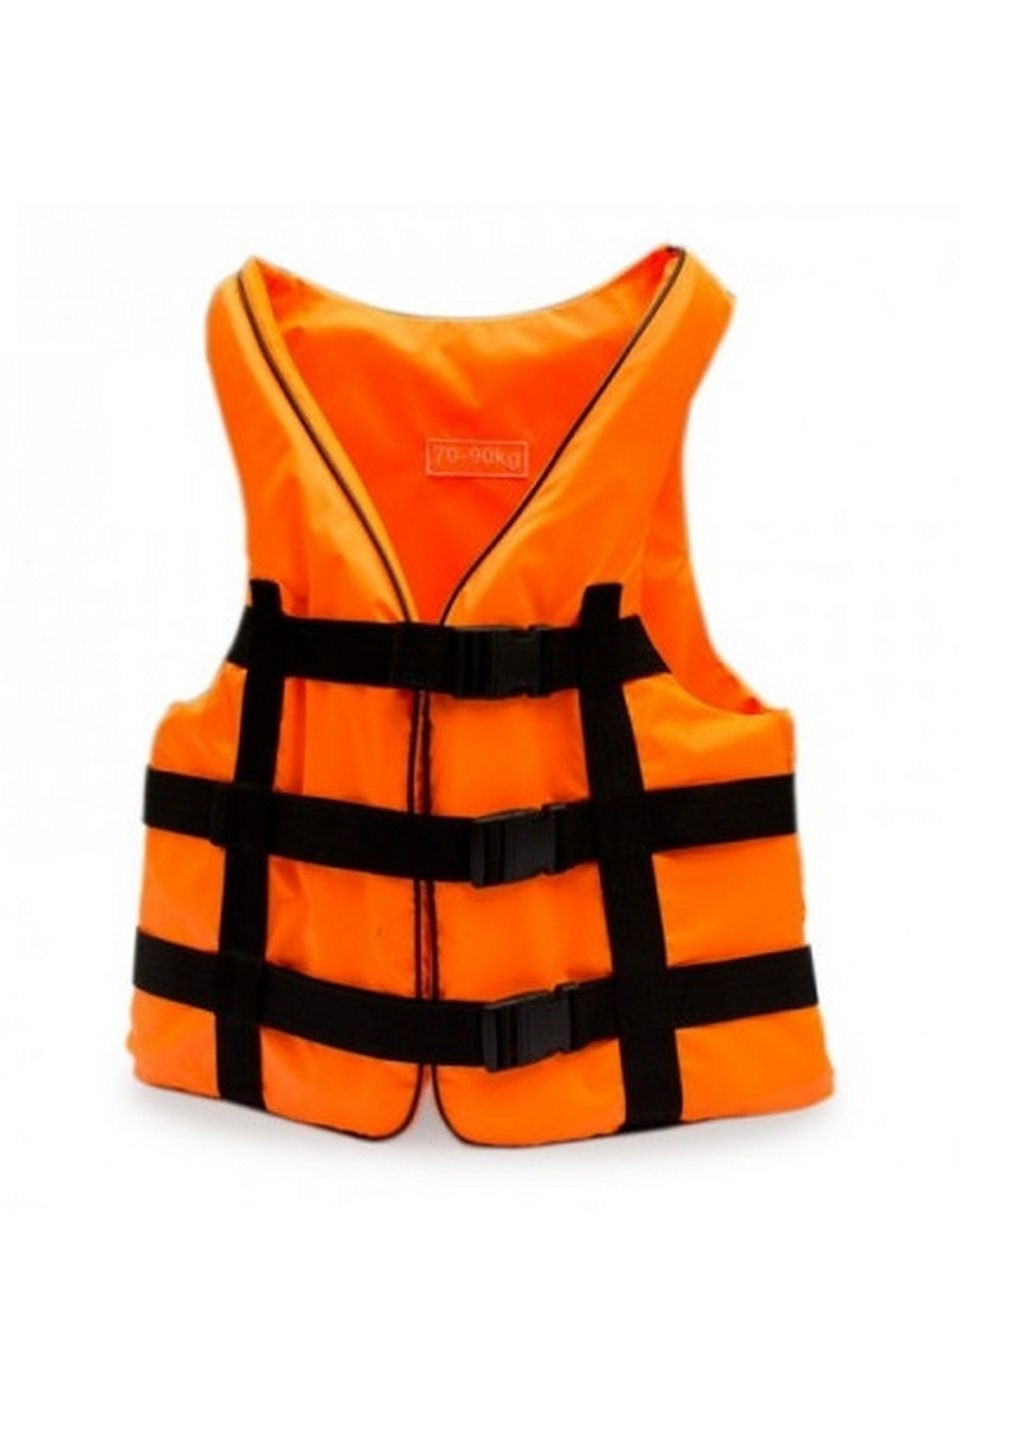 Спасательный жилет оранж 90-110 кг Ranger (292577840)